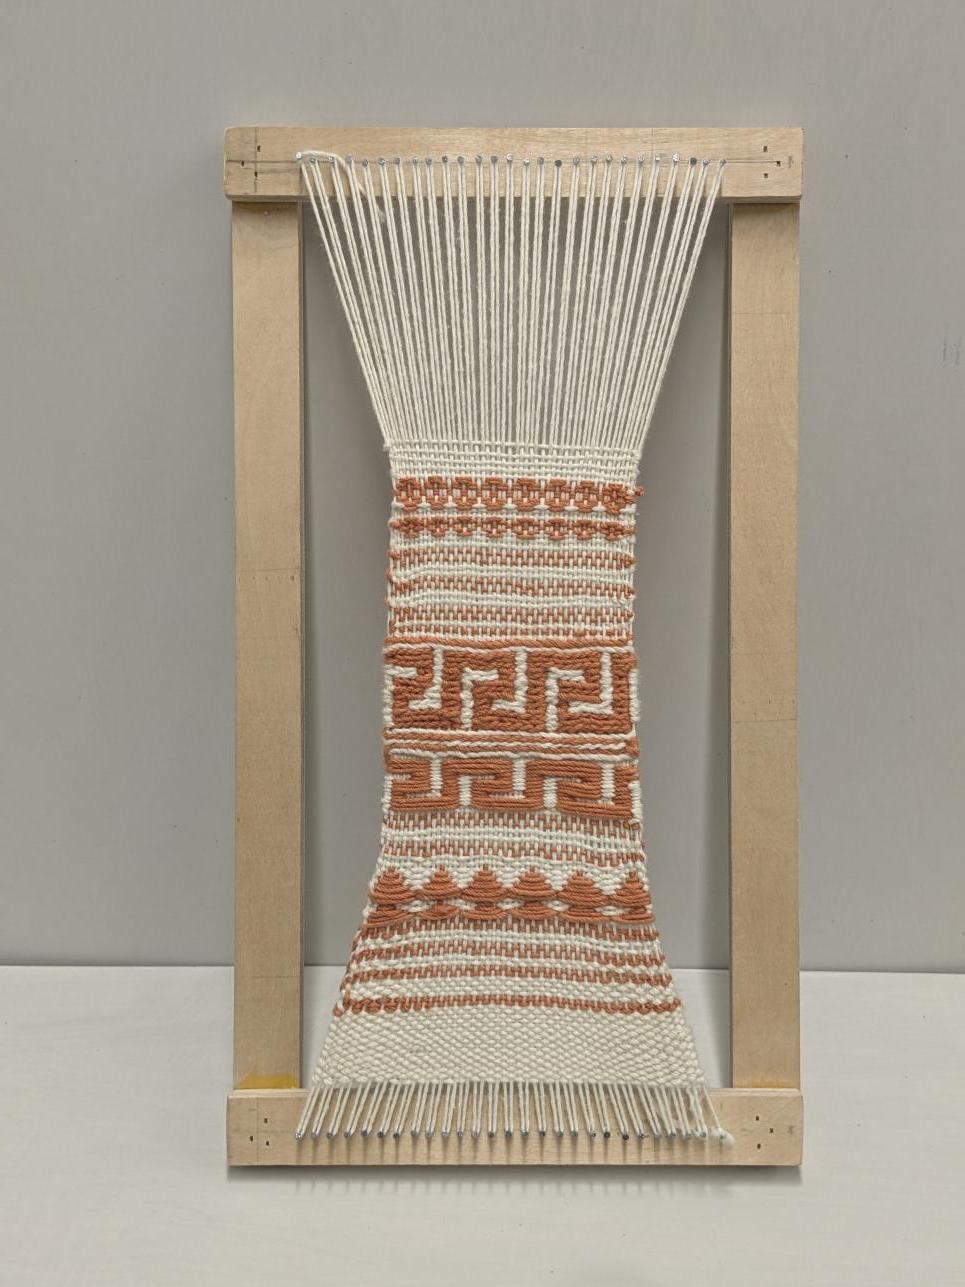 仿造古代手工织布机 